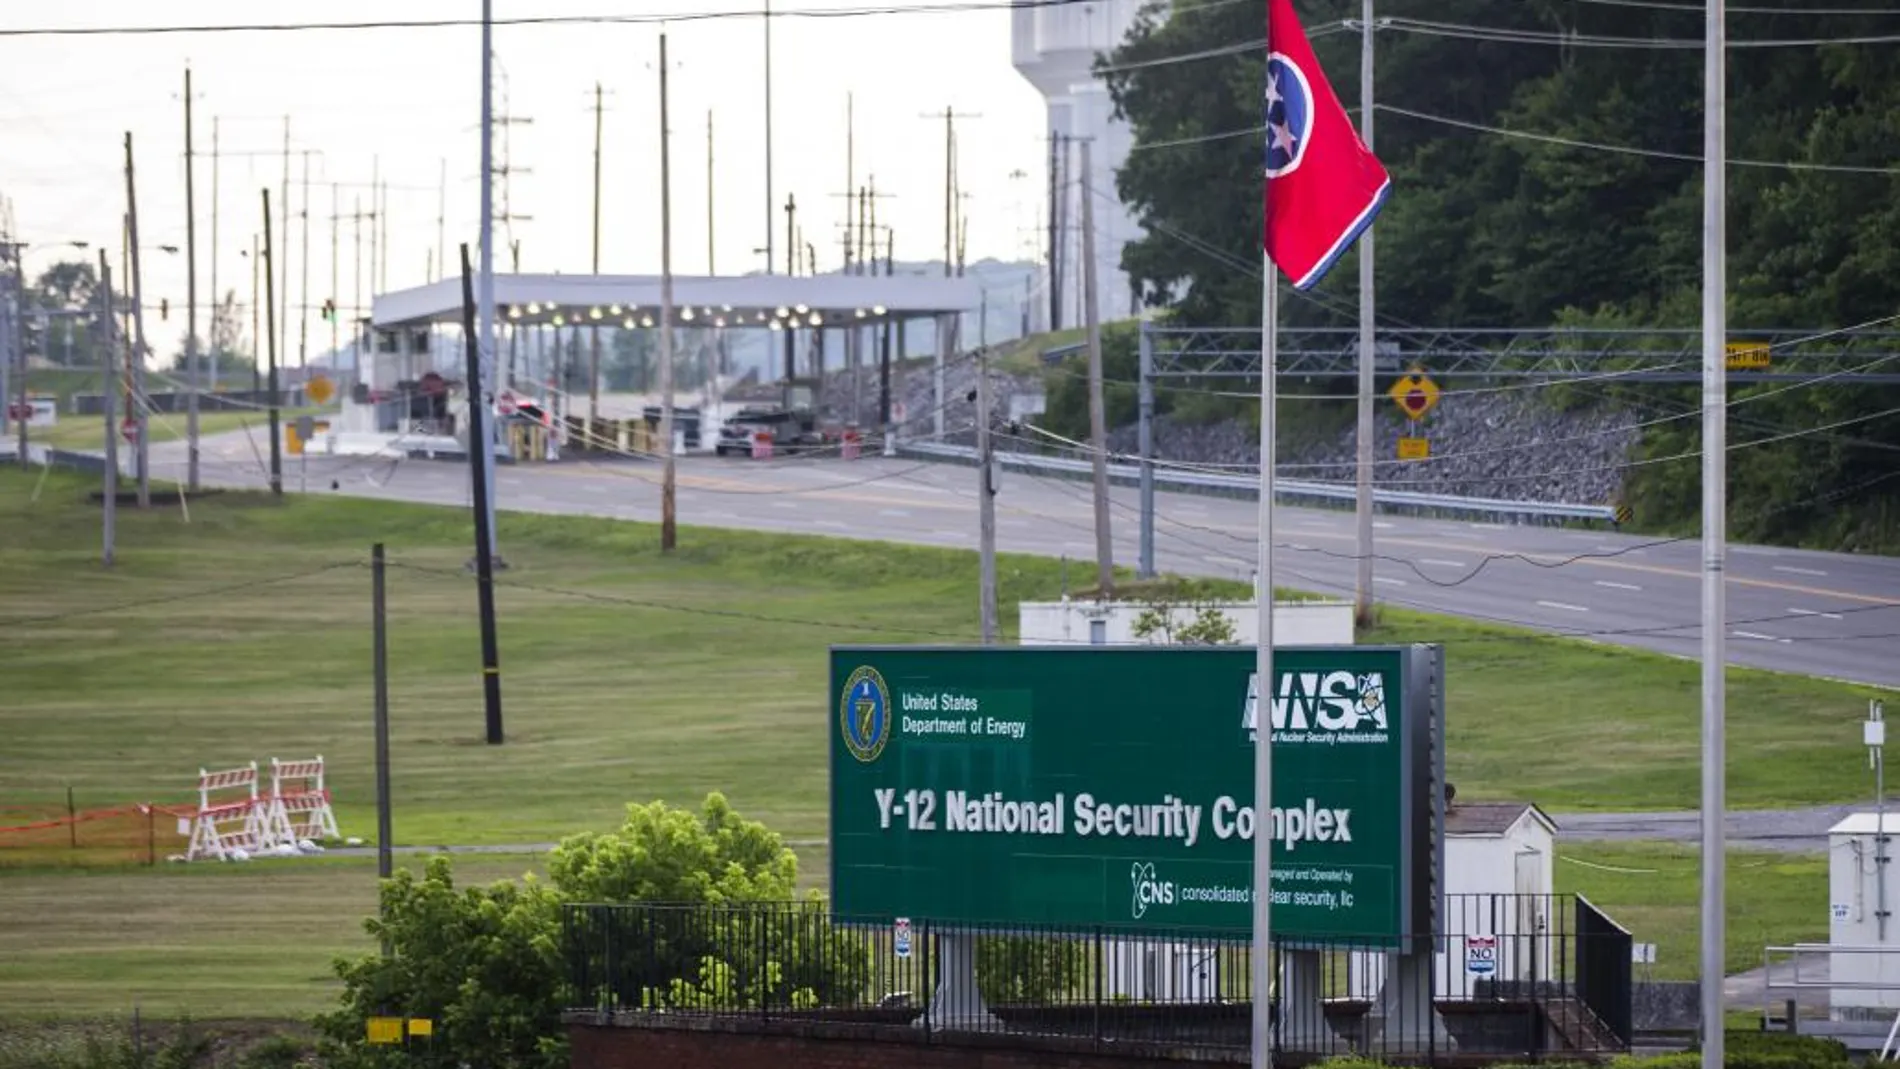 Vista general de la entrada al Complejo Nacional de Seguridad Y-12, que enriquece y almacena uranio para las armas nucleares estadounidenses, en Oak Ridge, Tennessee